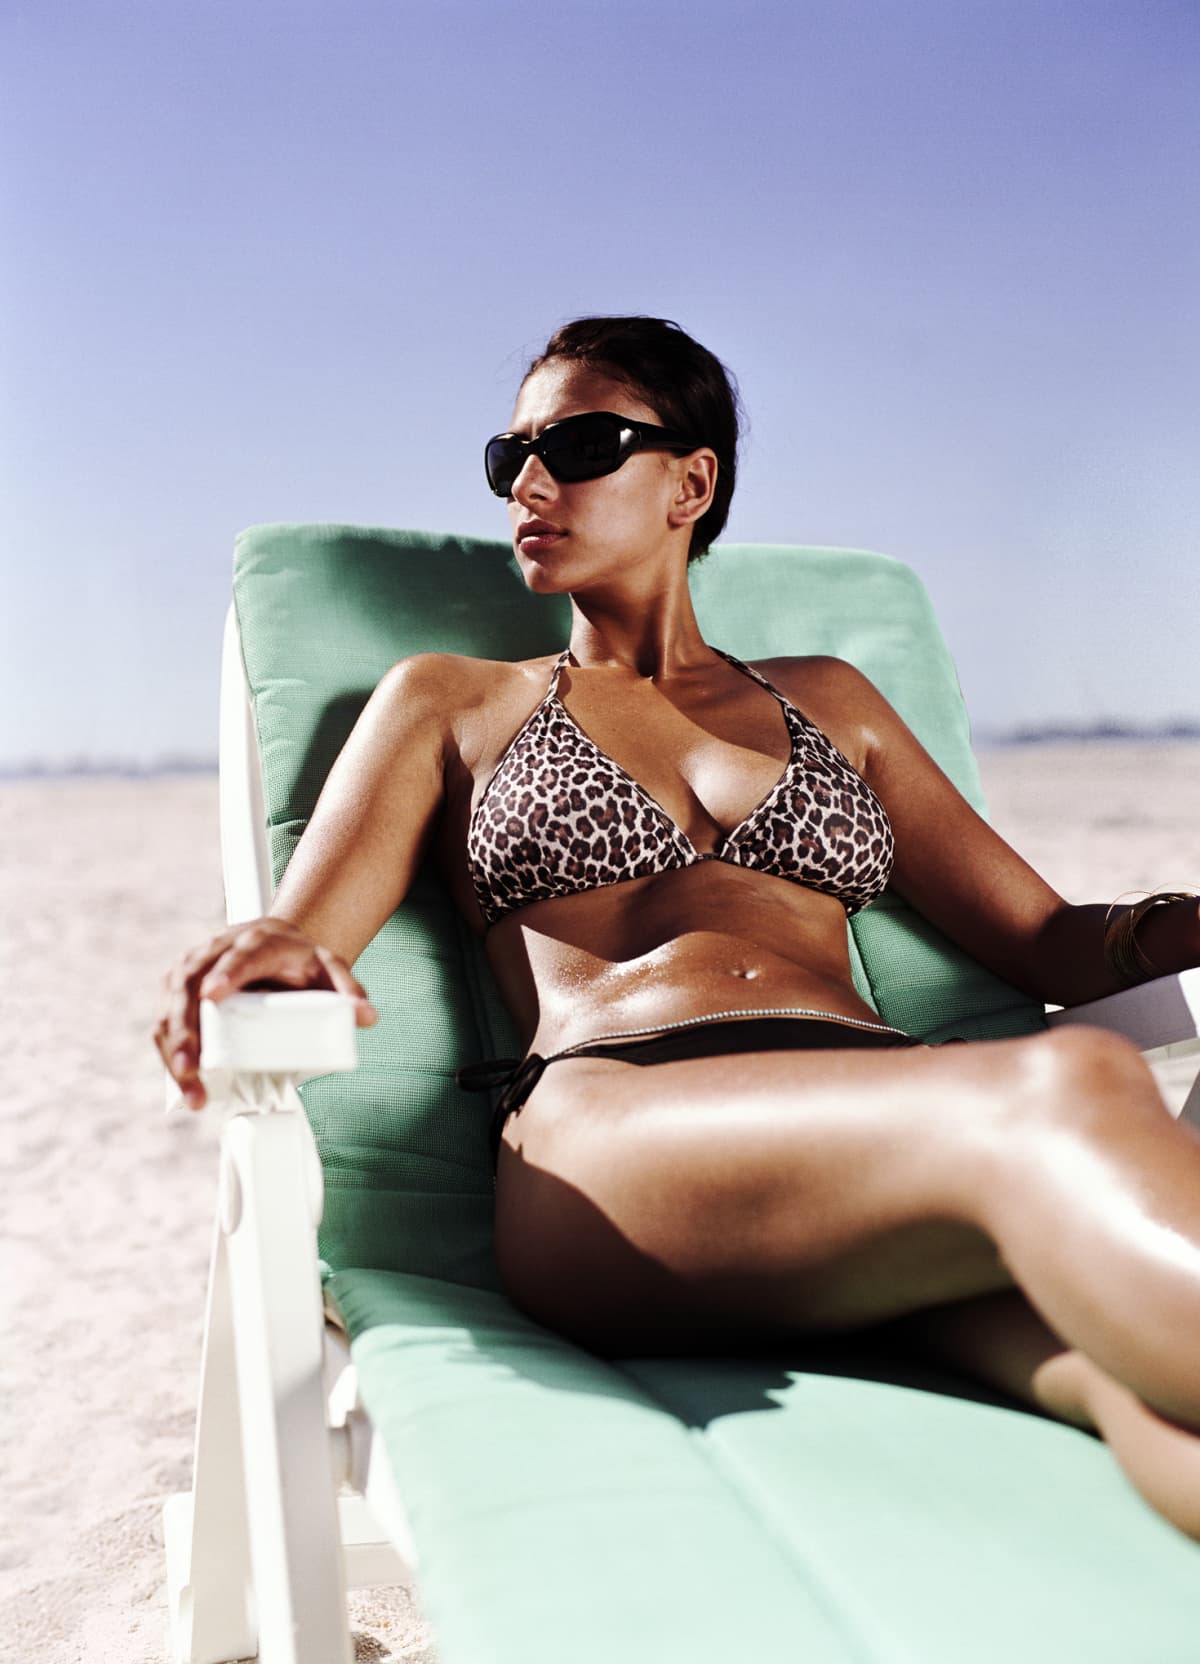 a woman tanning on a beach chair in the beach